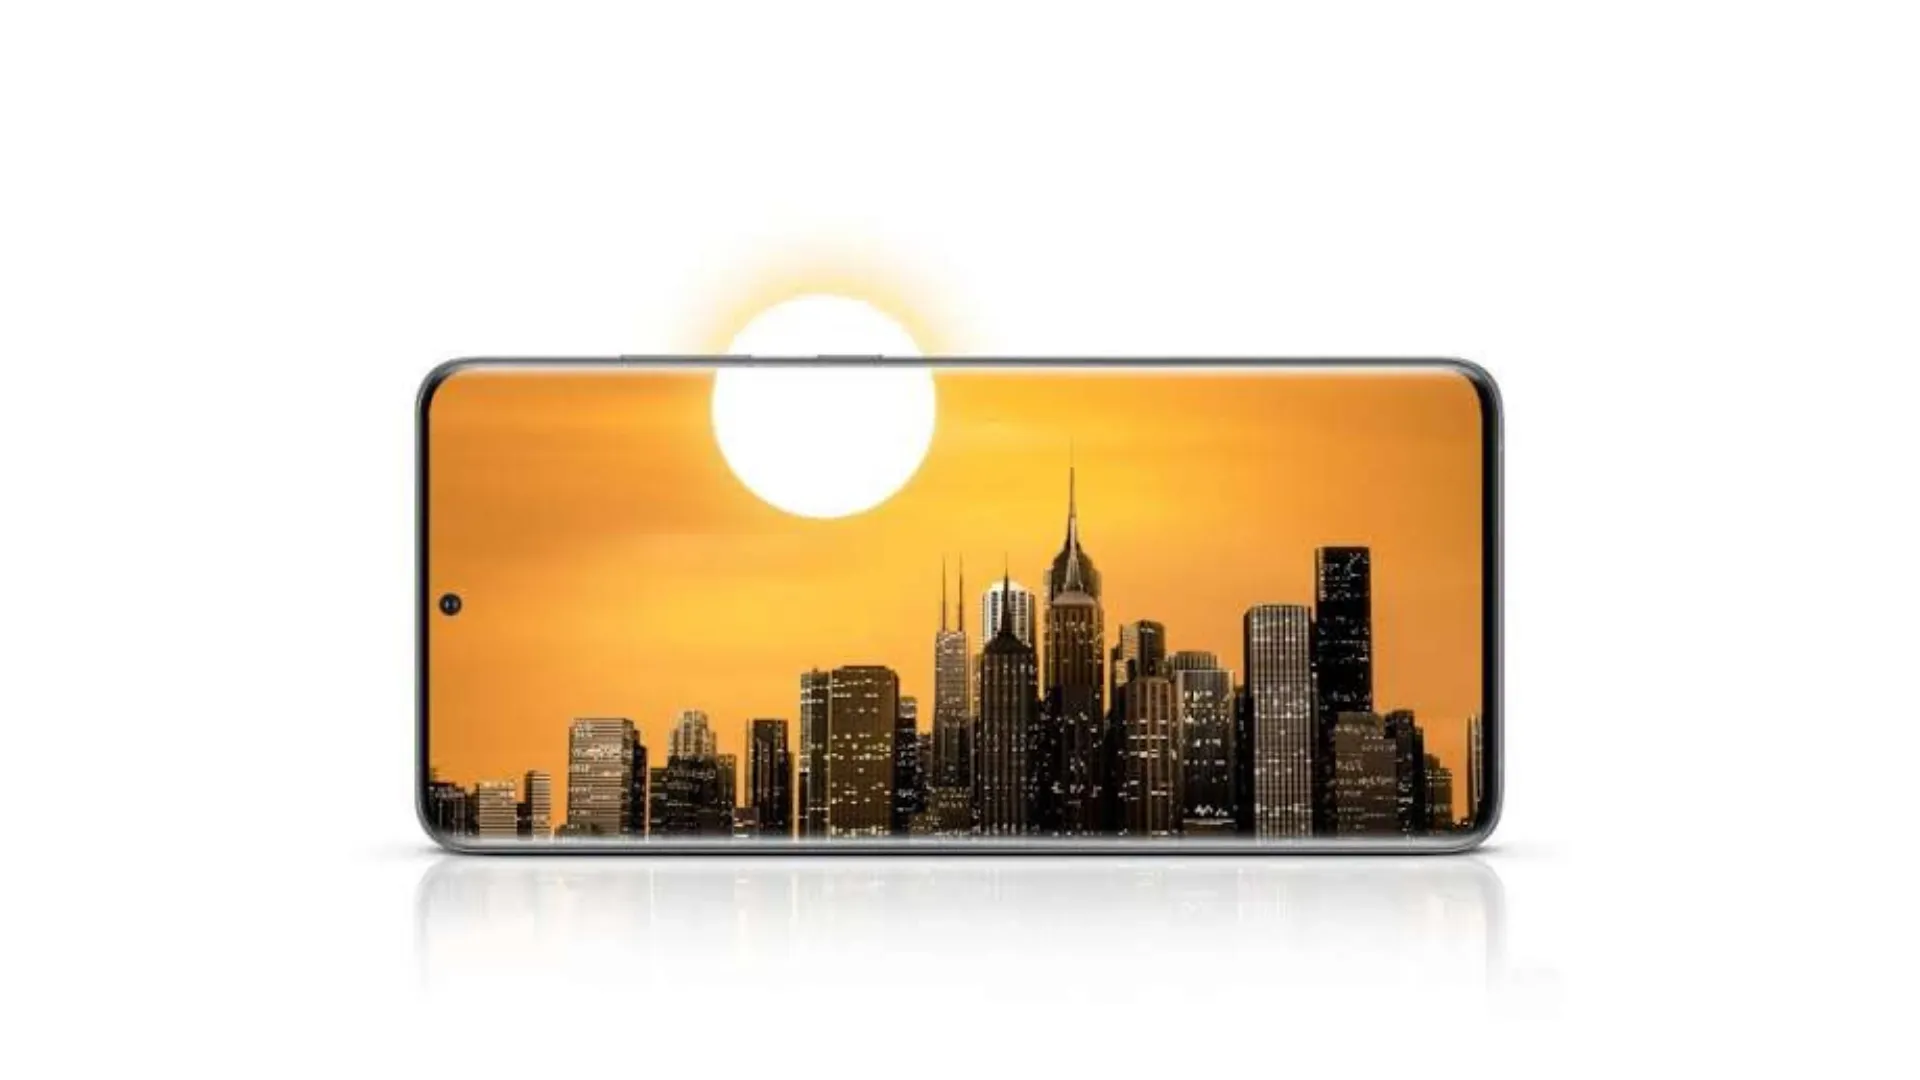 Tela do celular Samsung Galaxy S20 com imagens de prédios e o sol sobrepondo o telefone